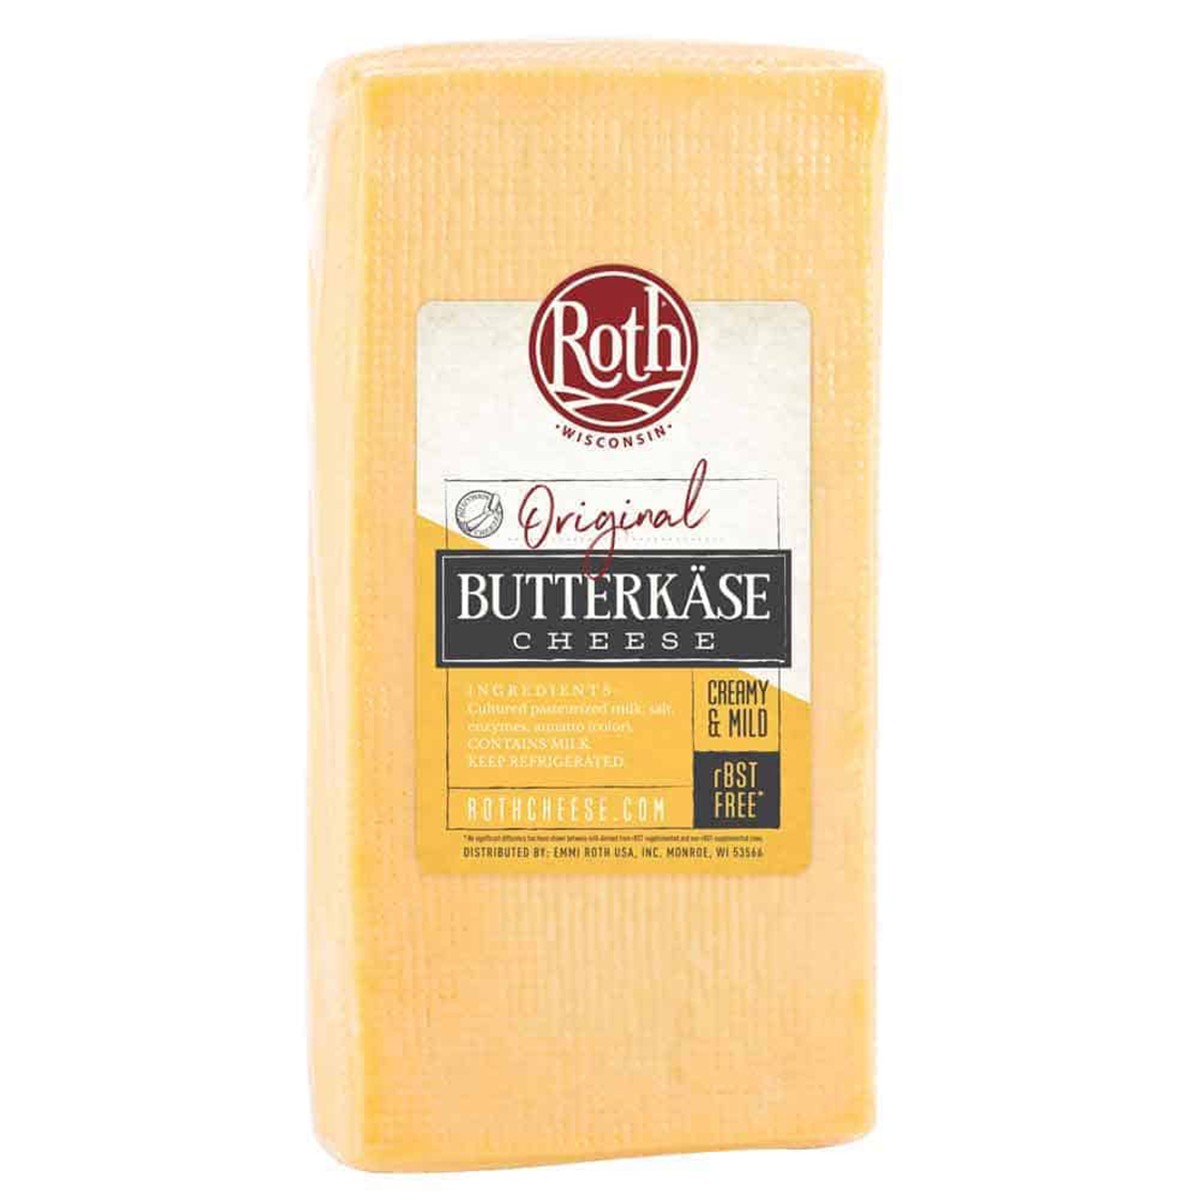 Butterkäse: Wisconsin's Little-Known “Butter Cheese”